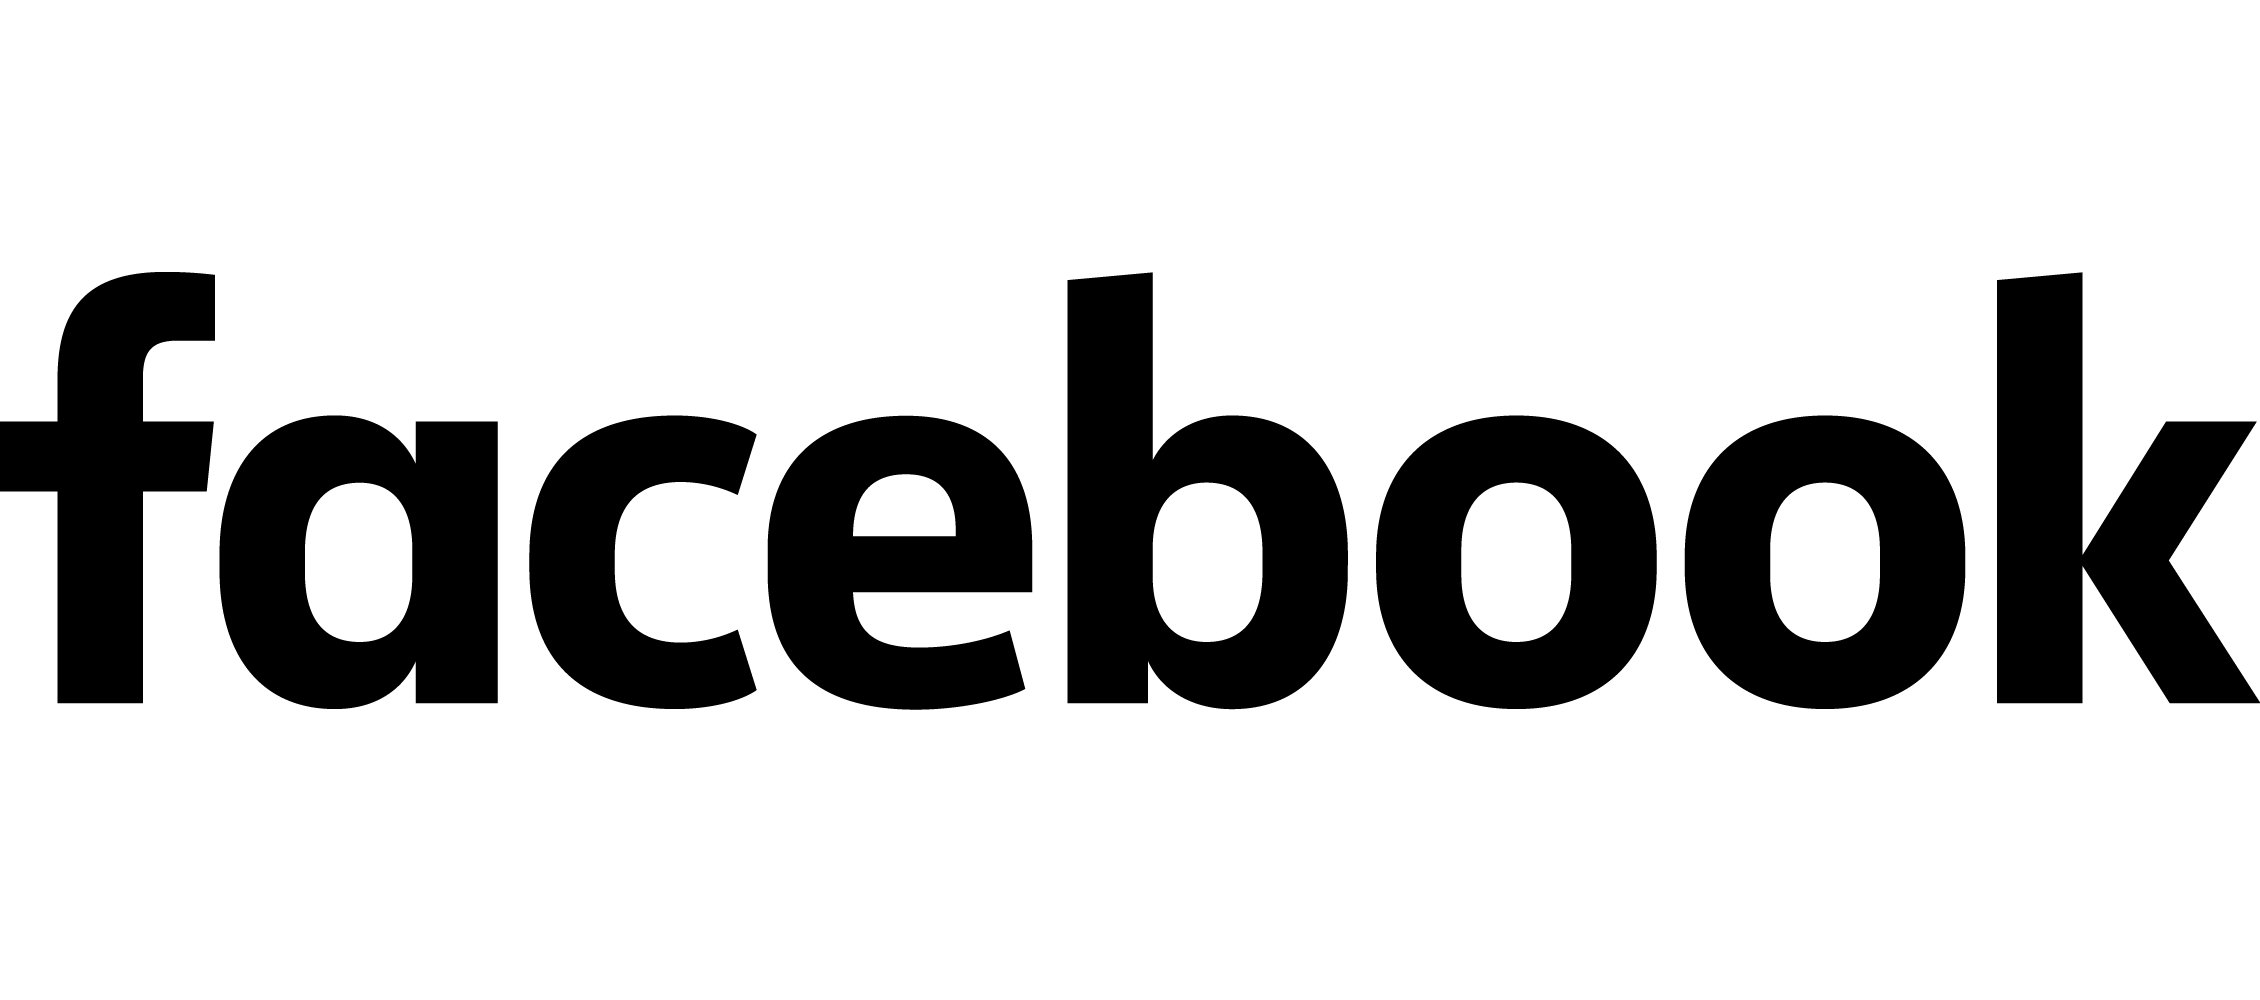 Monochrome Facebook logo